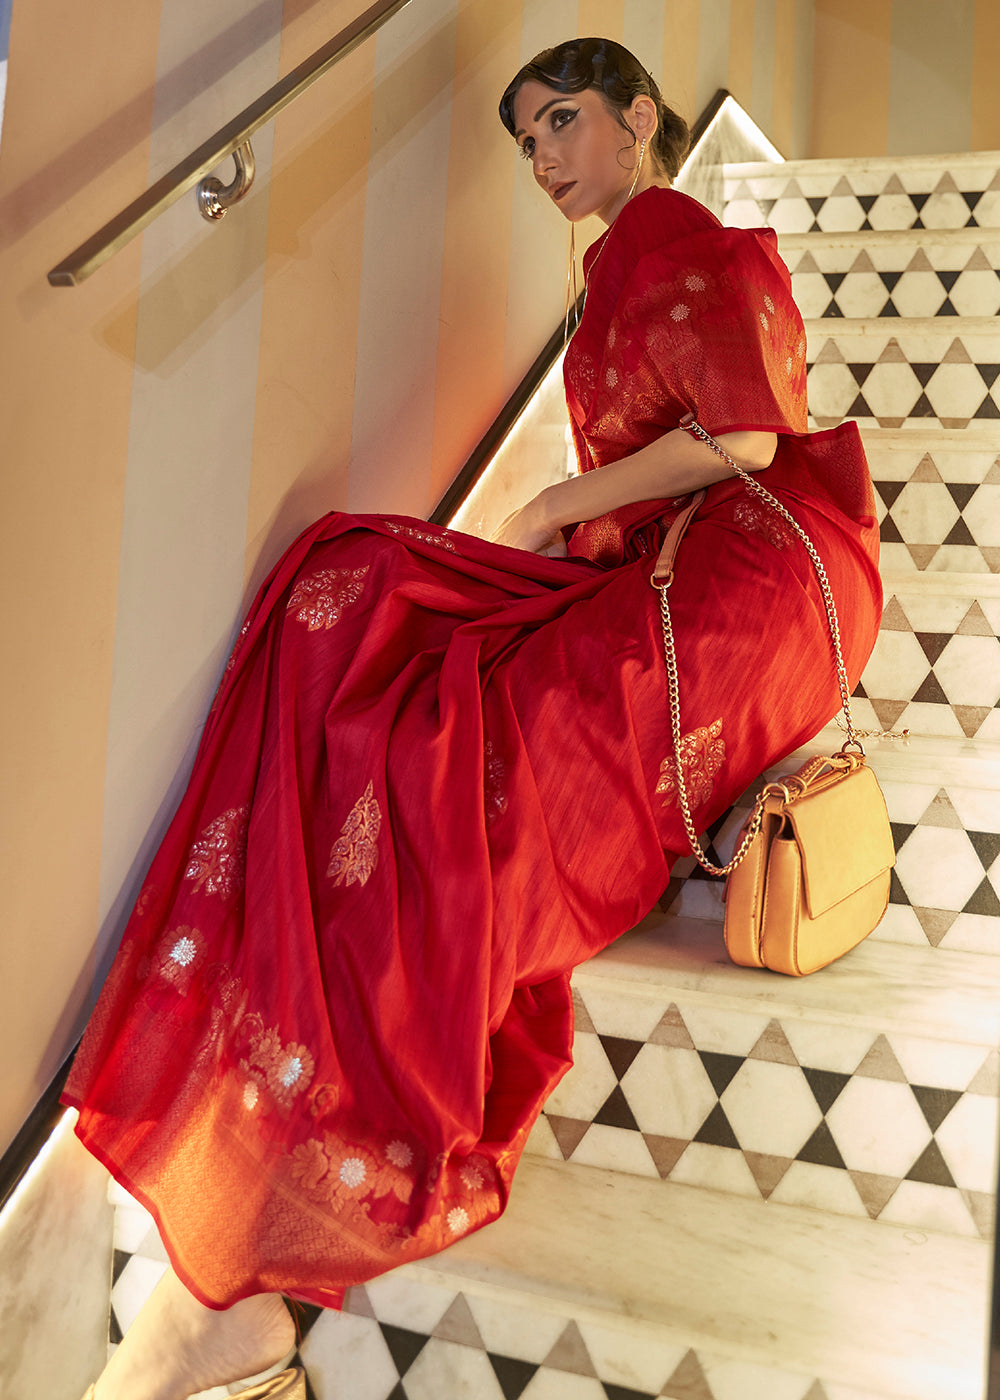 Buy Now Carrot Red Tussar Banarasi Silk Designer Saree Online in USA, UK, Canada & Worldwide at Empress Clothing. 